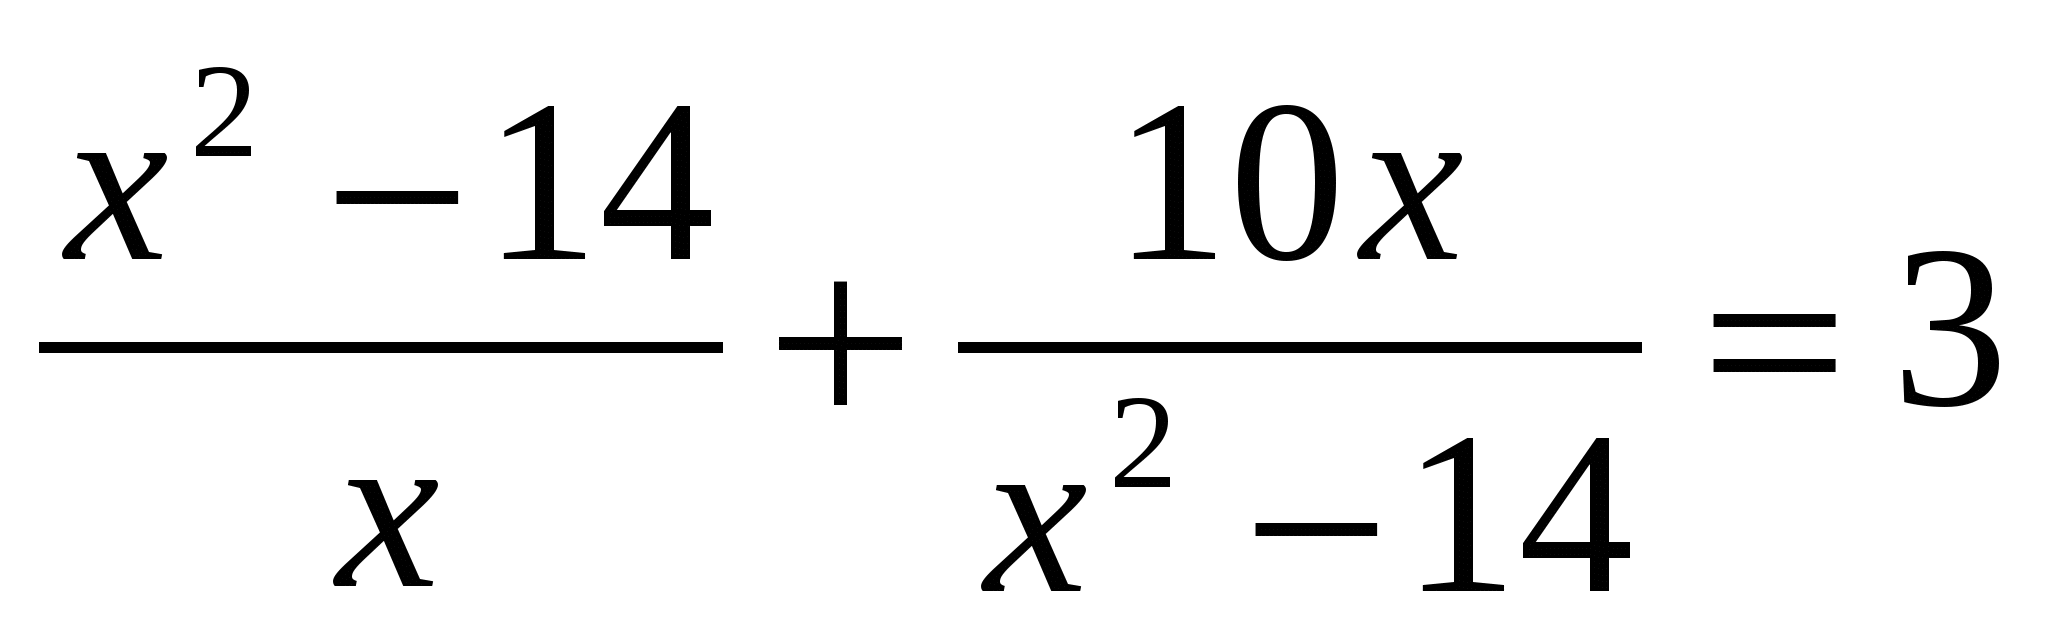 Практический материал к ГИА по математике для 9 класса по теме «Уравнения»